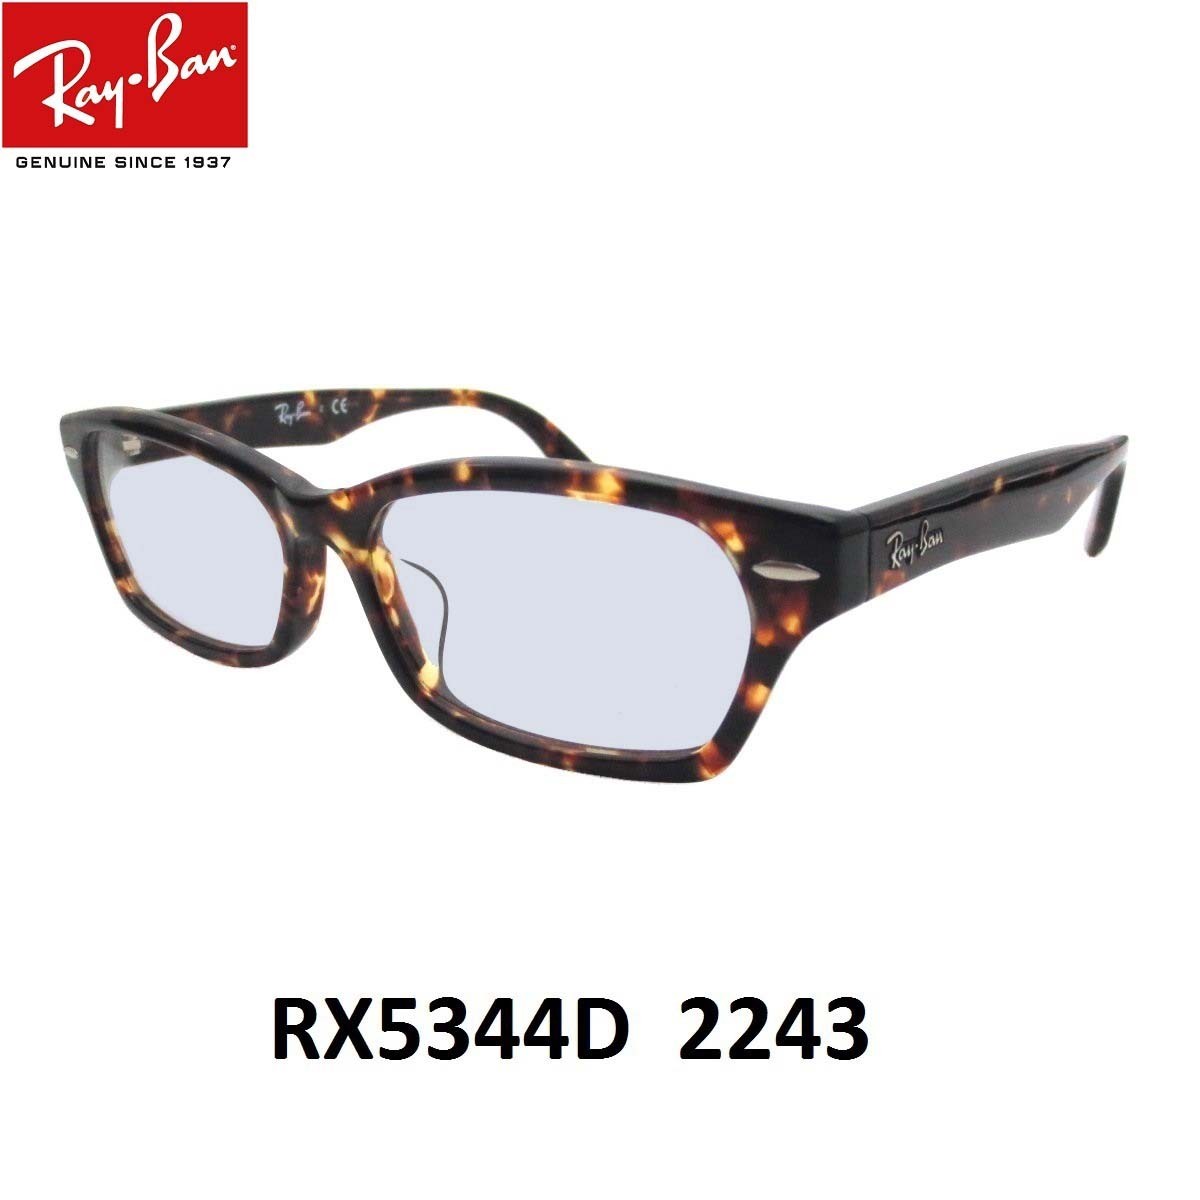 レイバン ライトカラー サングラス Ray-Ban RX5344D-2243 サイズ55ミリ アジア...